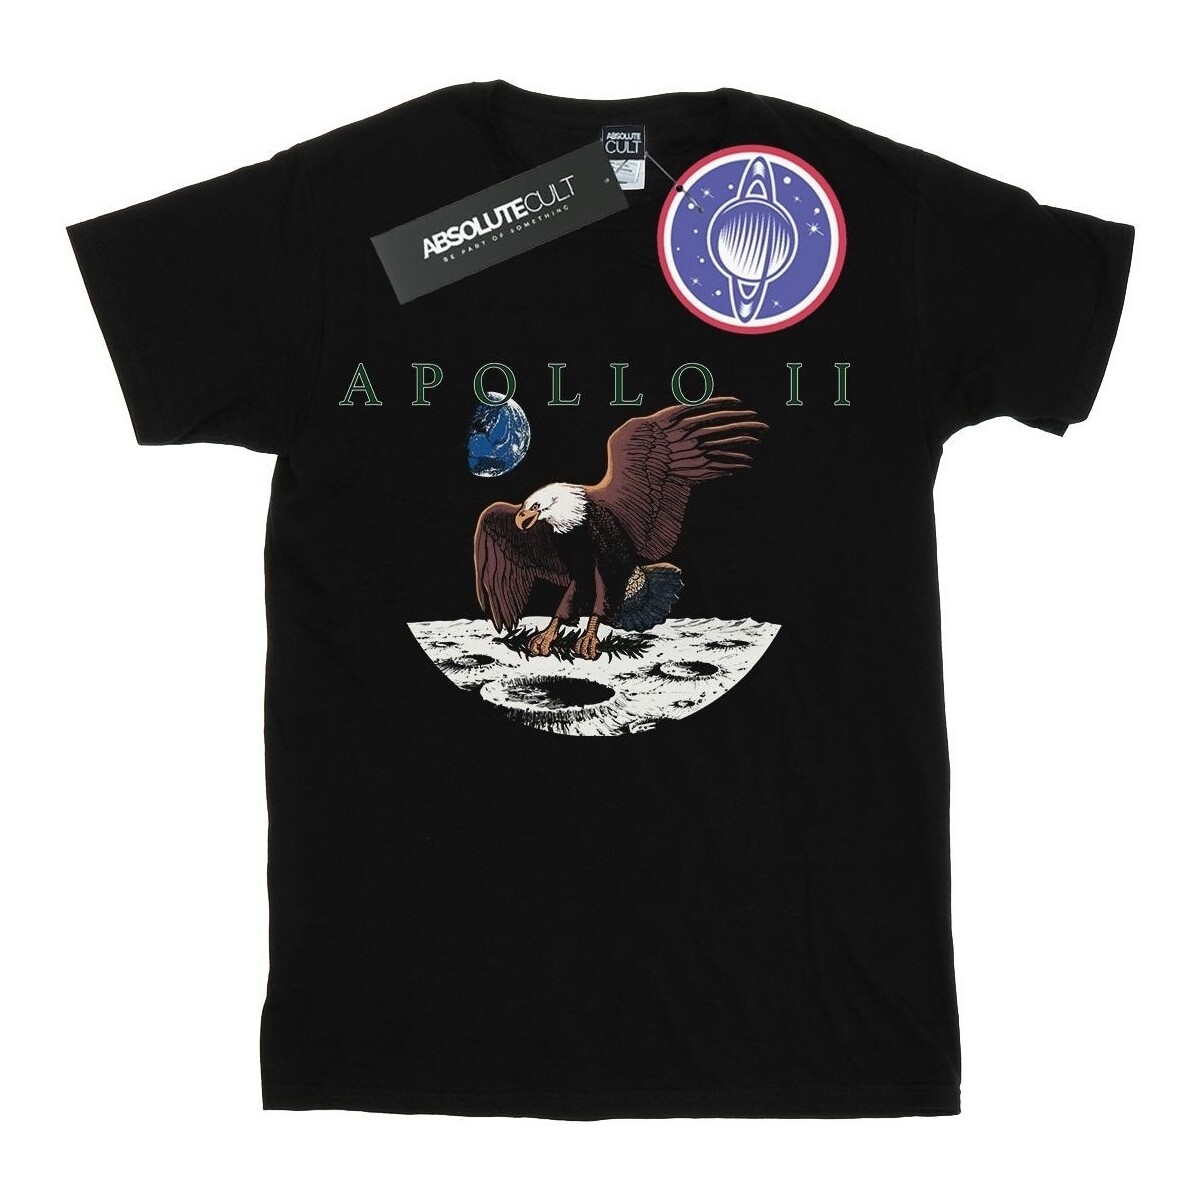 Vêtements Garçon T-shirts manches courtes Nasa Apollo 11 Vintage Noir